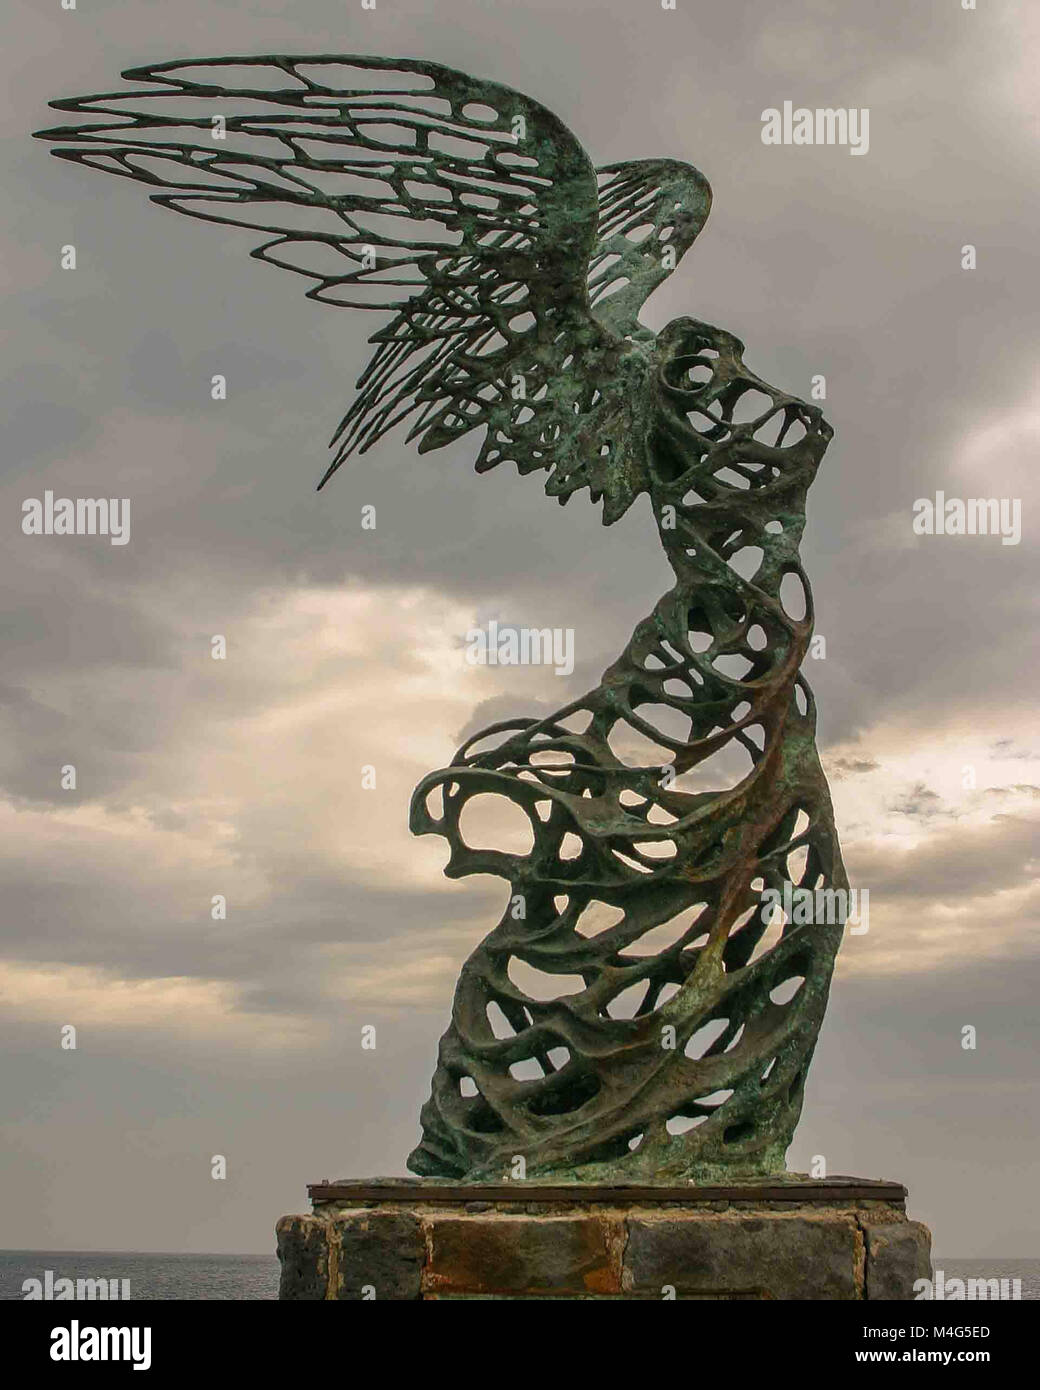 Giardini Naxos, Sicilia, Italia. 12 Oct, 2004. Una estatua de Nike, la diosa  de la victoria, por Carmelo Mendola, se encuentra en la ciudad balneario de  Giardini Naxos, Sicilia, Italia, con vistas